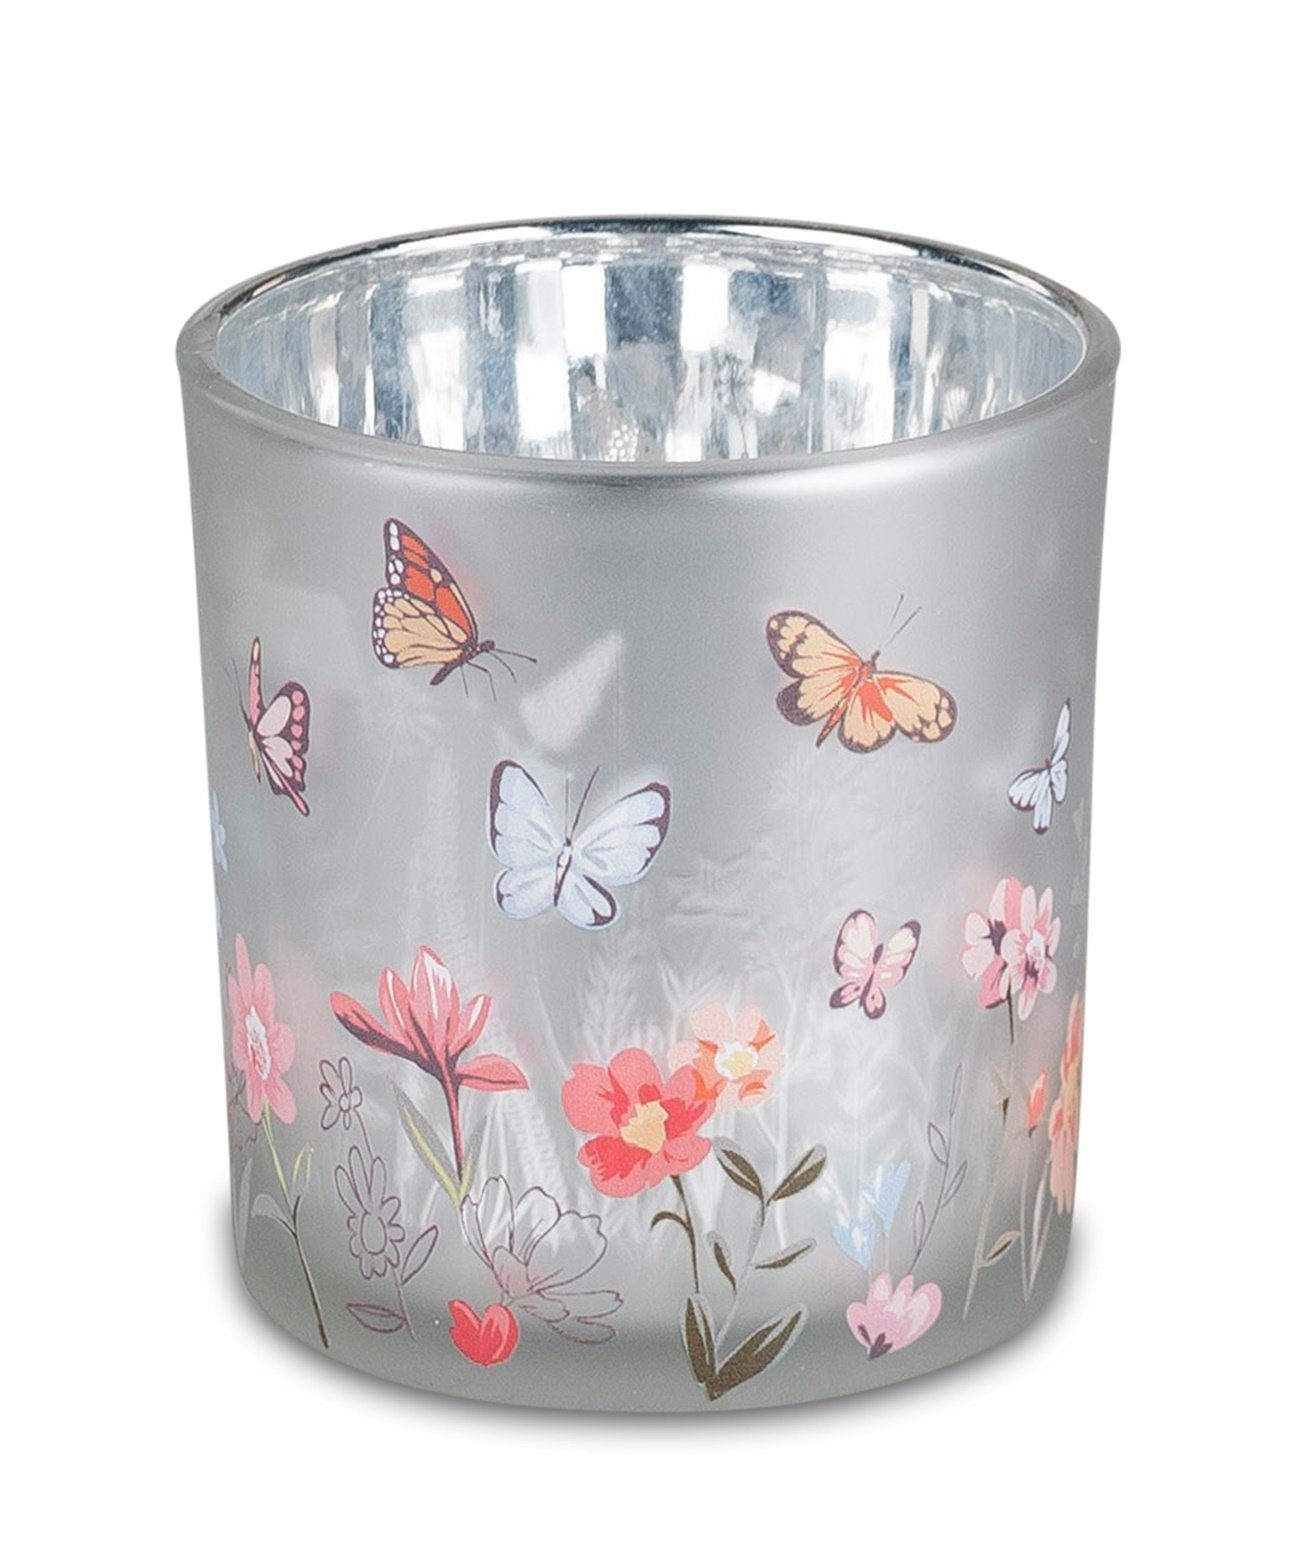 dekojohnson Windlicht Windlicht Teelichthalter Blumendekor silber 8cm